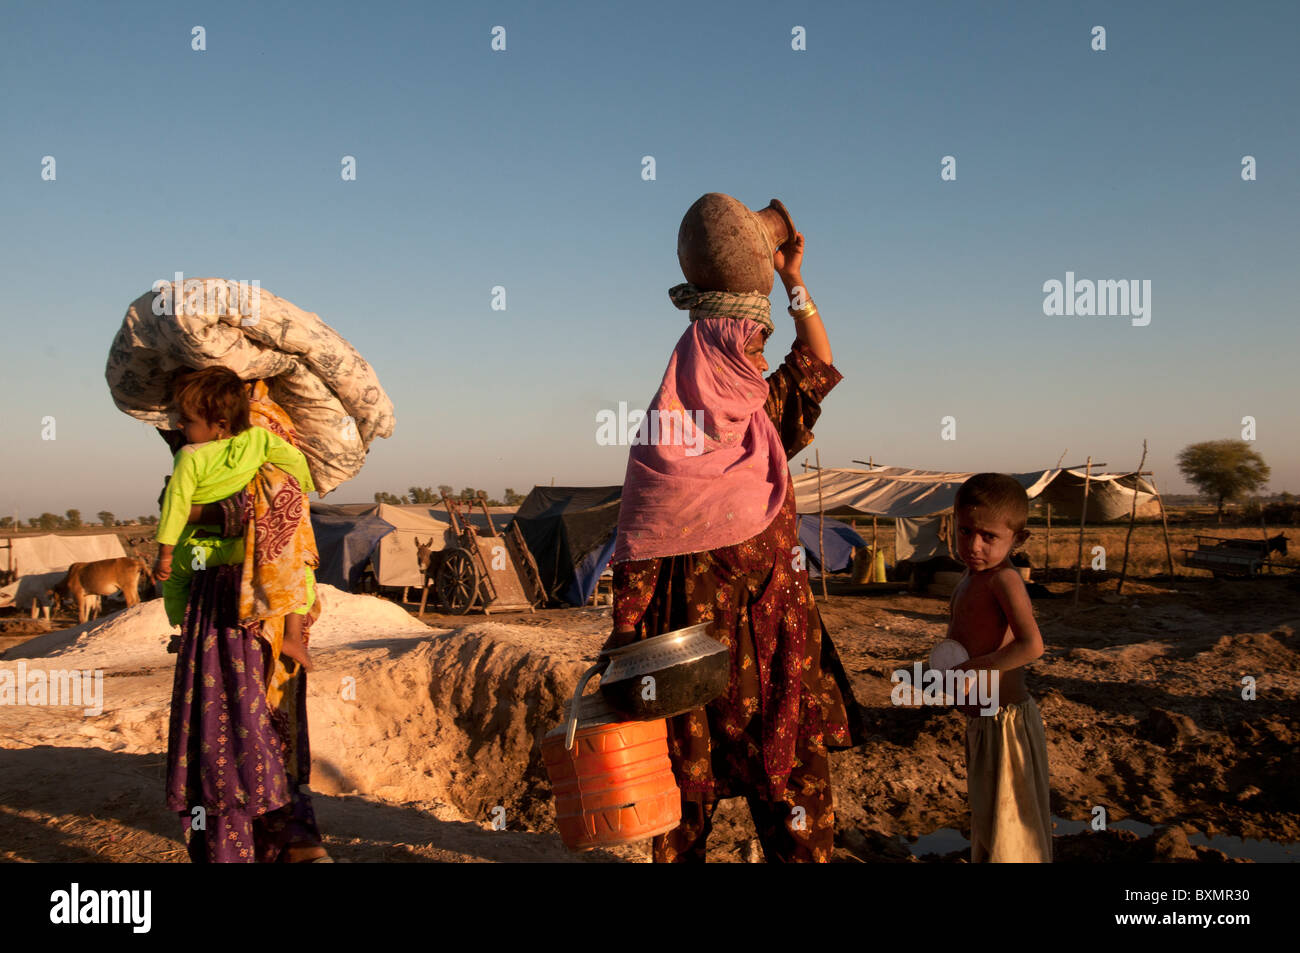 Sindh Provinz Shaddat Kot. Nach der Flut. Tankstelle-Lager für Vertriebene. Zwei Frauen gehen mit ihren Besitztümern Stockfoto